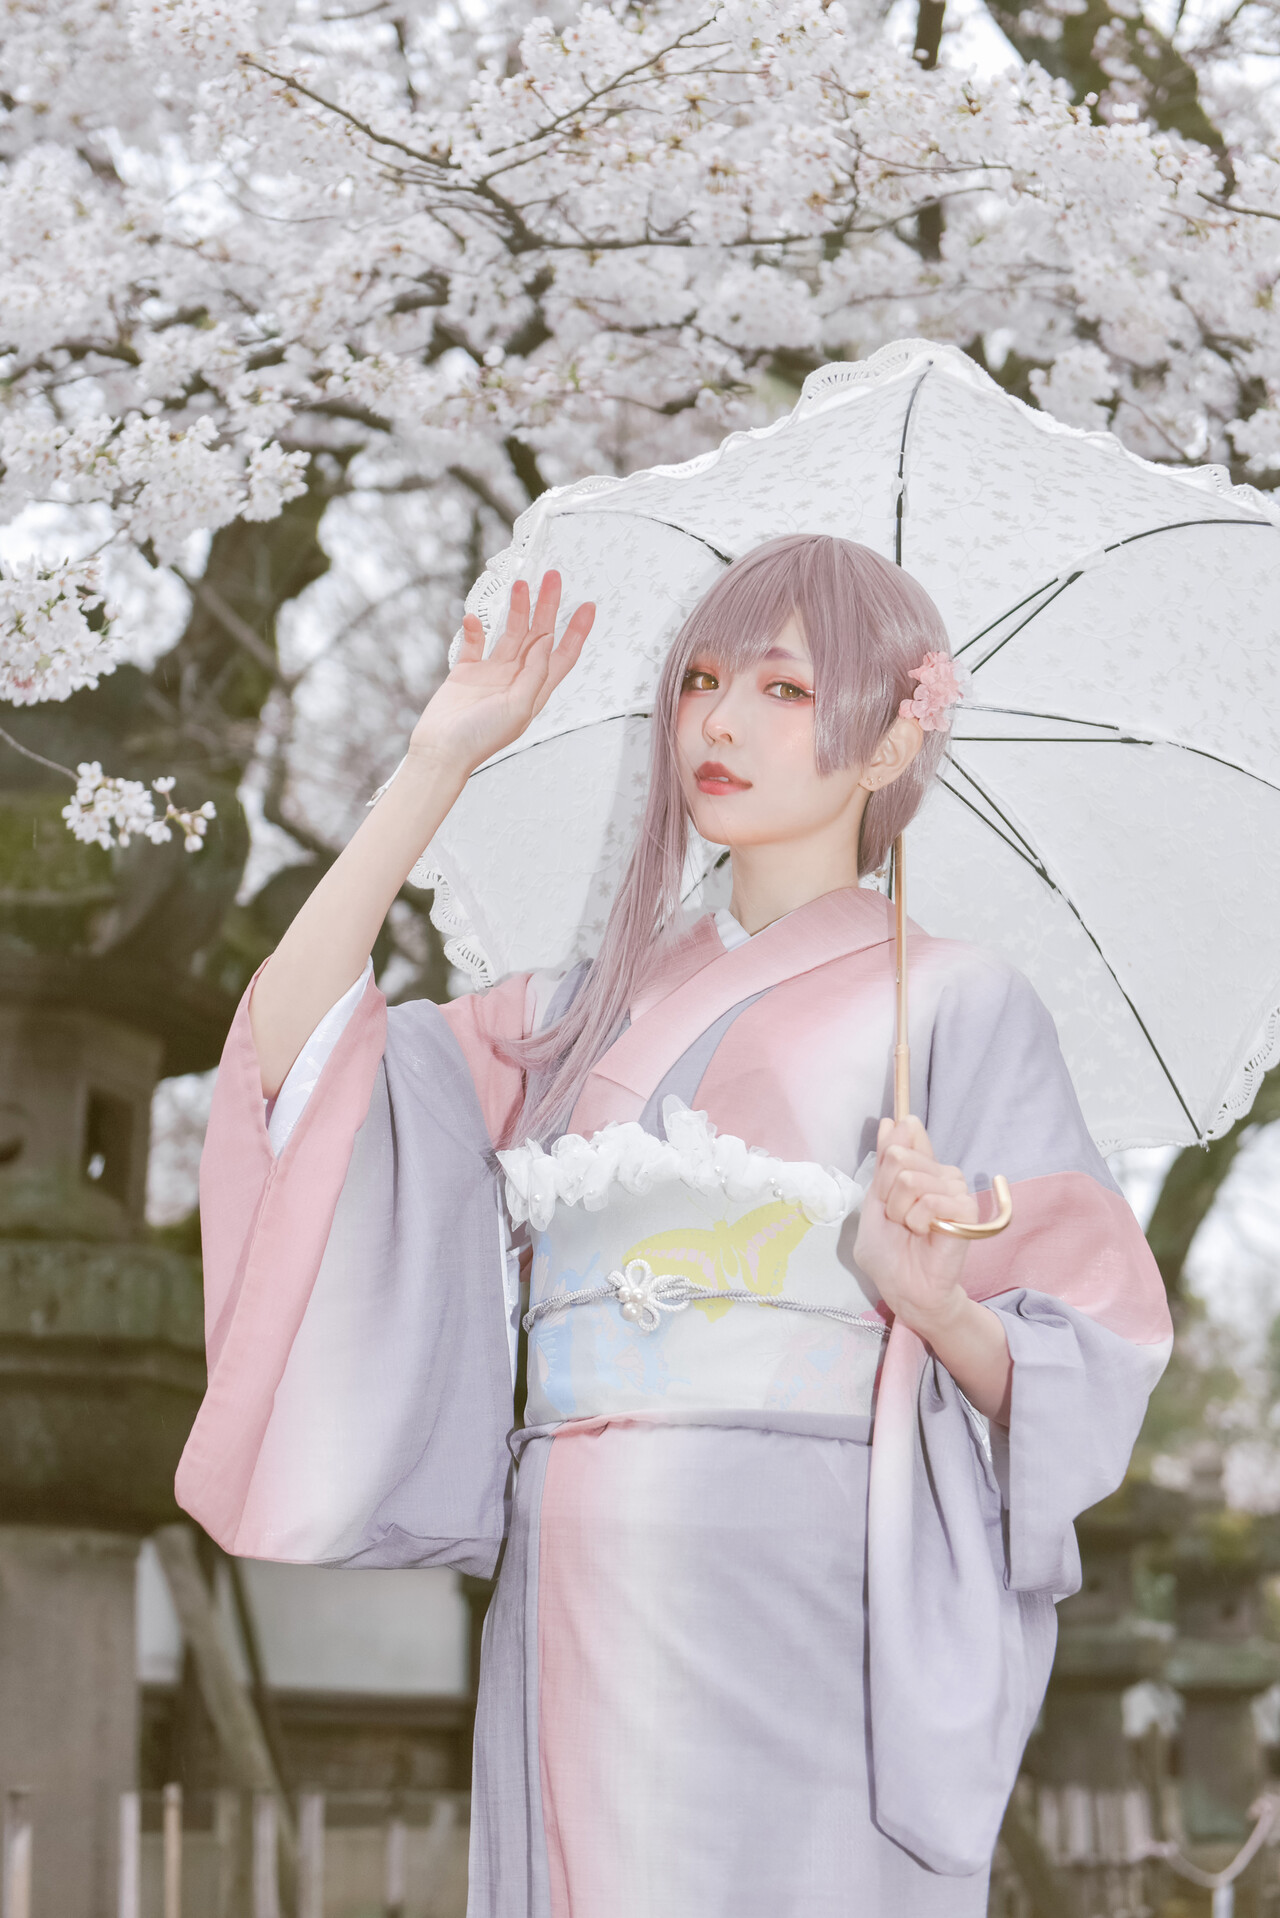 [Ely] Sakura桜 2021 Kimono Girl Ver.